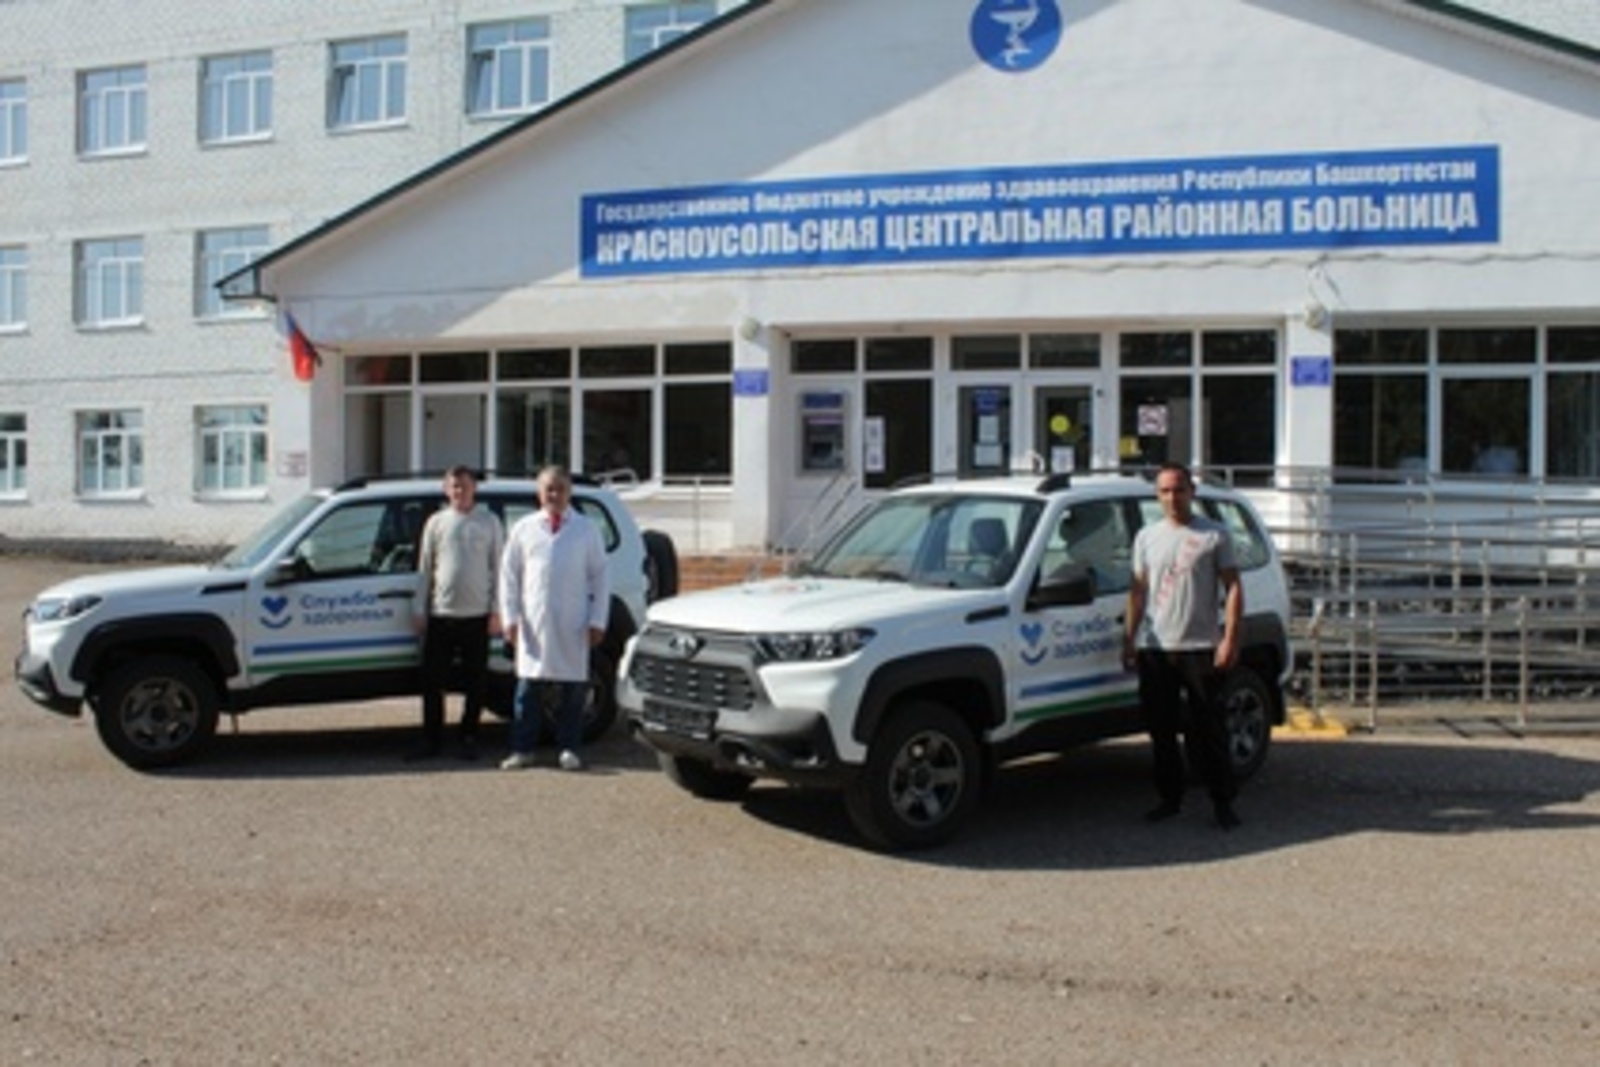 Благодаря нацпроекту «Здравоохранение» автопарк еще одной больницы Башкортостана пополнился двумя автомобилями